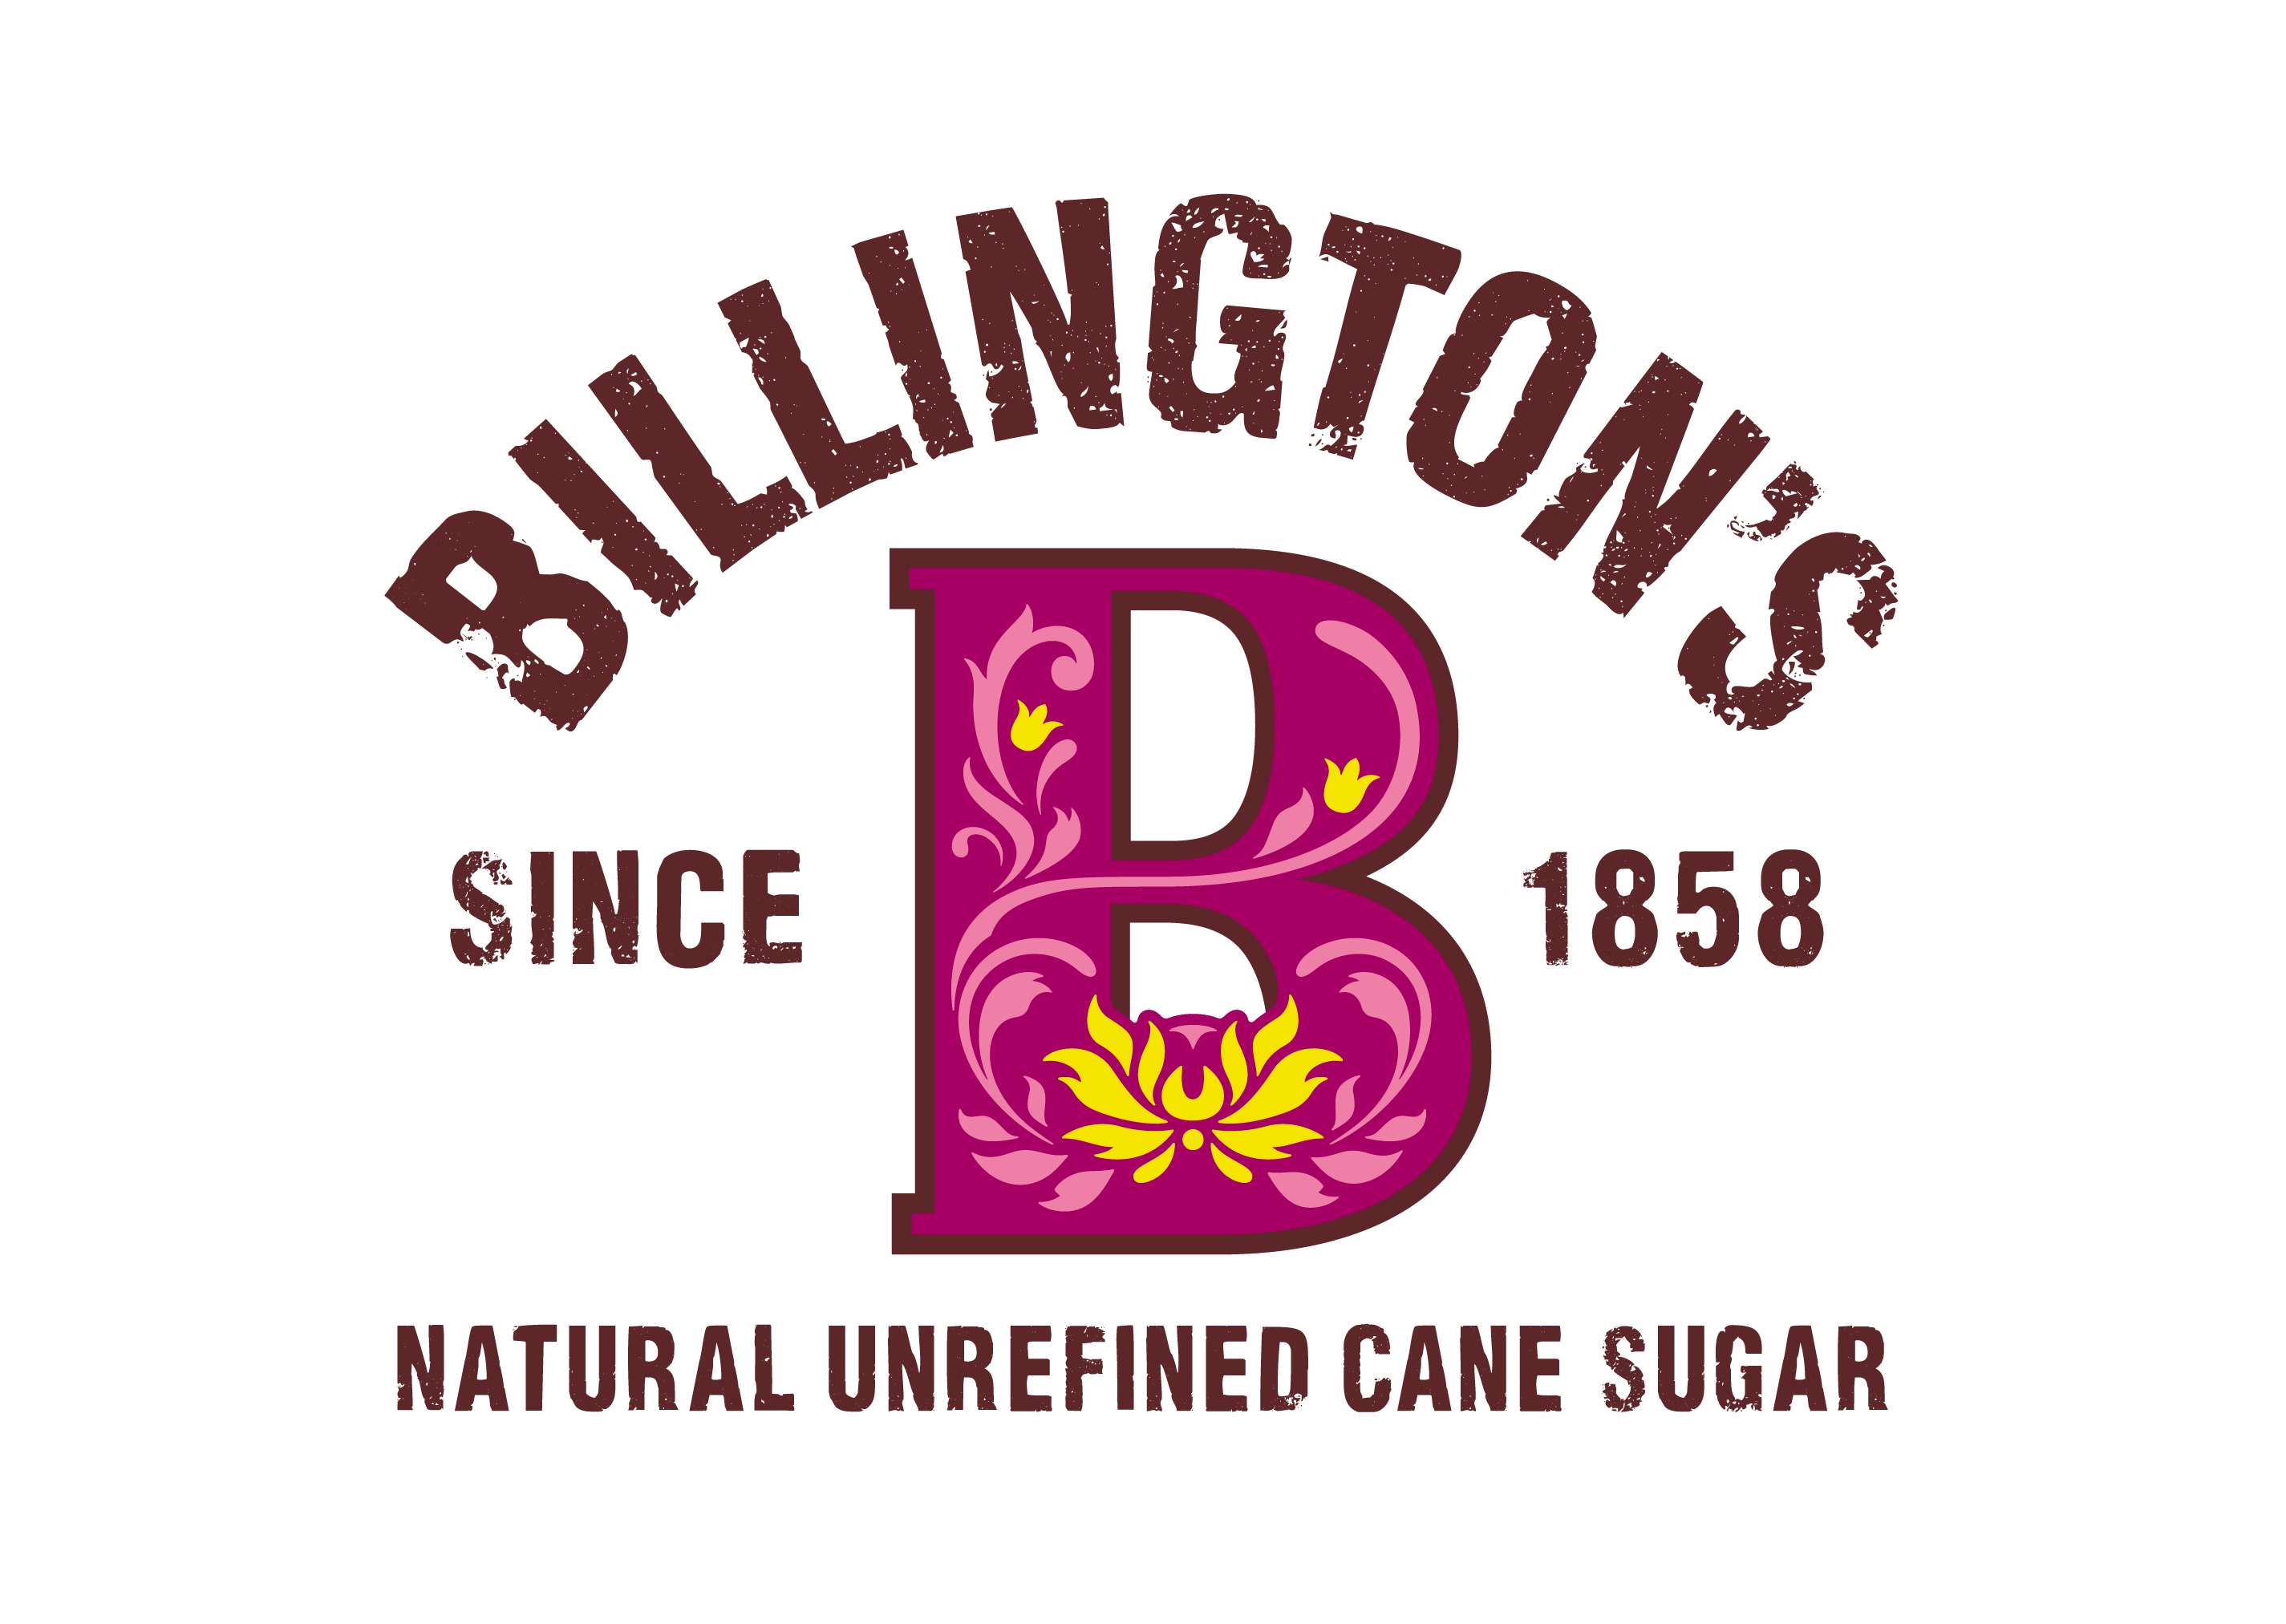 Billington's logo